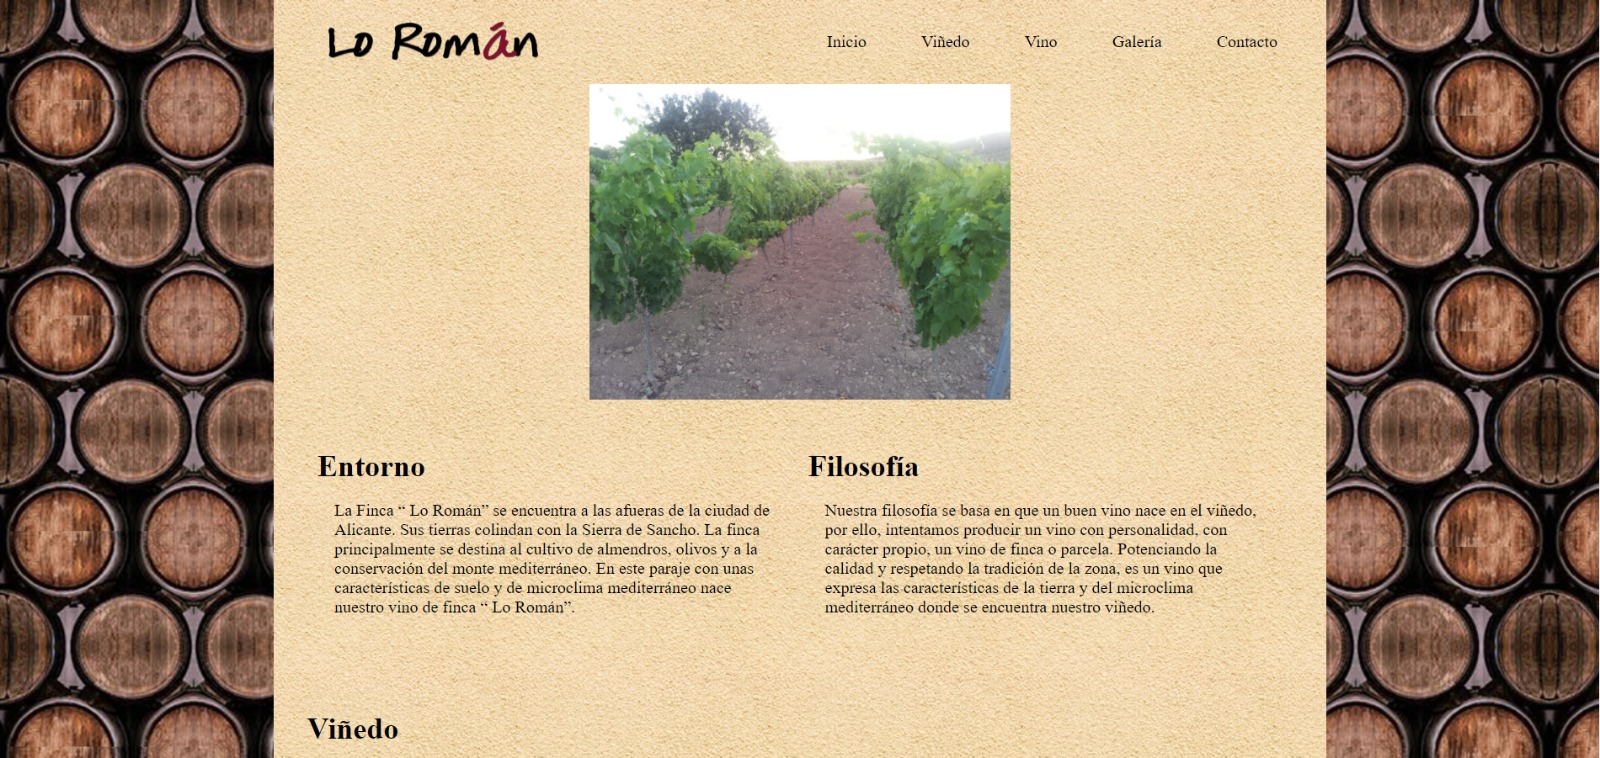 Proyecto de creación de una página web para un viñedo.